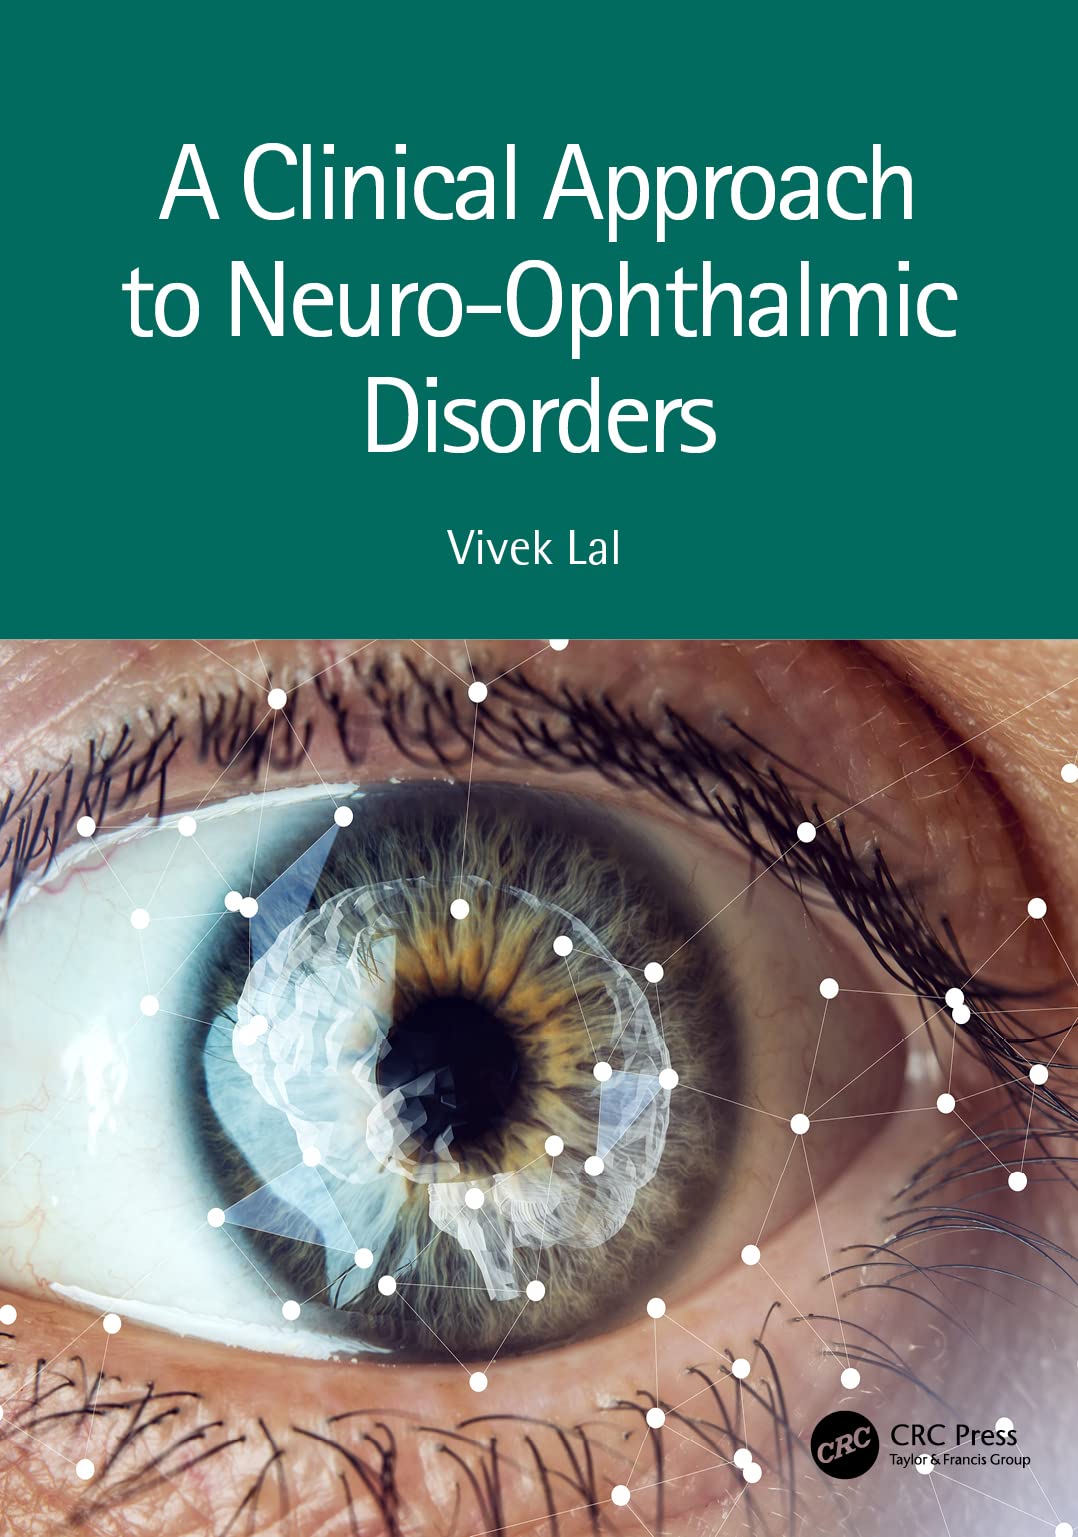 Libri A Clinical Approach To Neuro-Ophthalmic Disorders NUOVO SIGILLATO, EDIZIONE DEL 14/07/2022 SUBITO DISPONIBILE